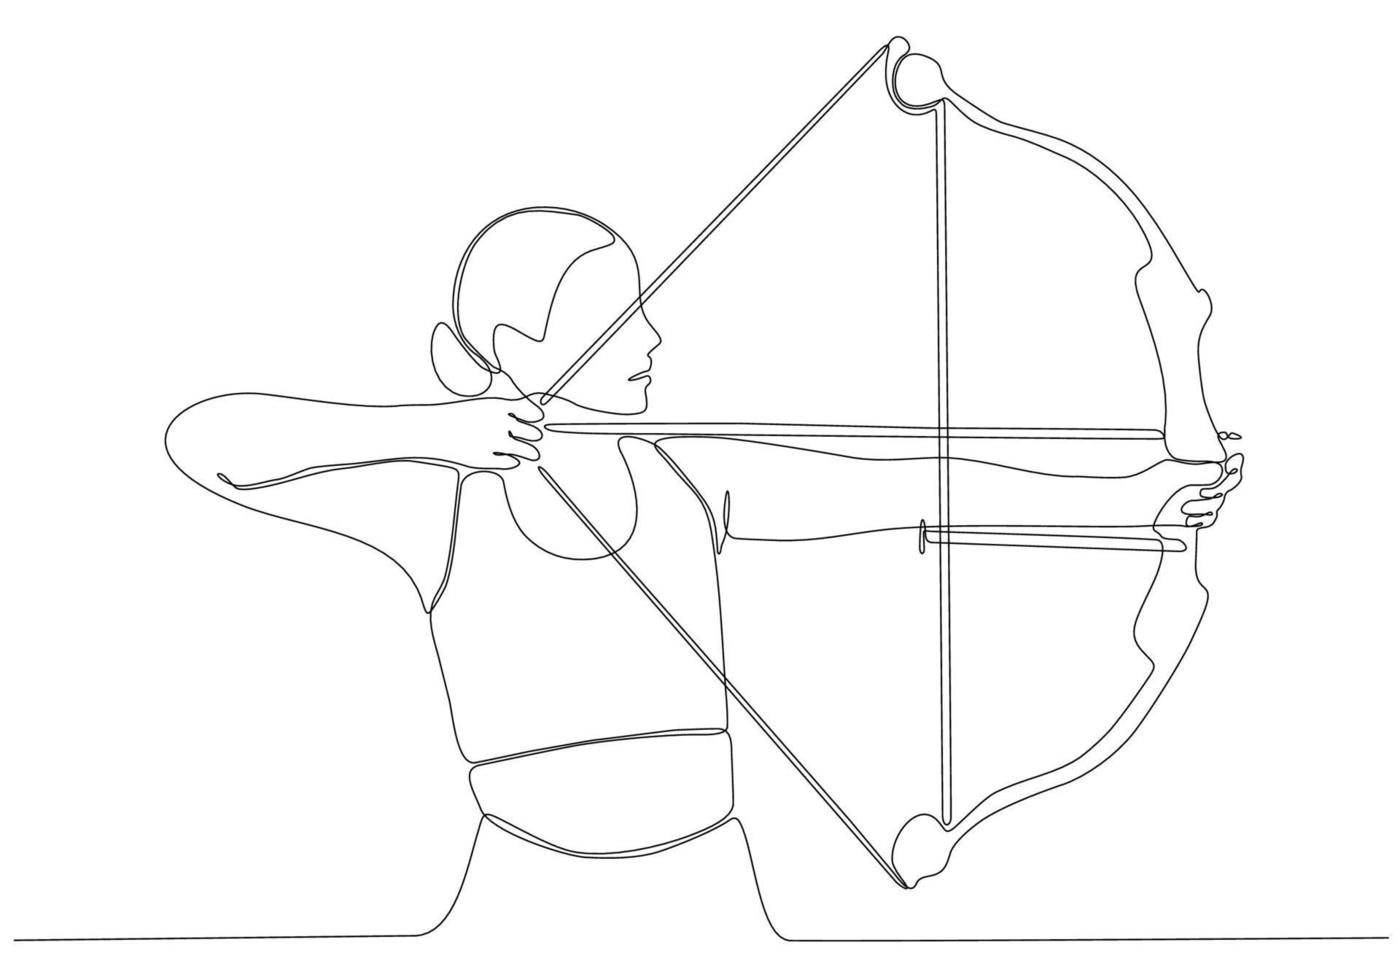 Eine Strichzeichnung oder durchgehende Strichzeichnungen einer Bogensportlerin. Premium-Vektor-Illustration vektor